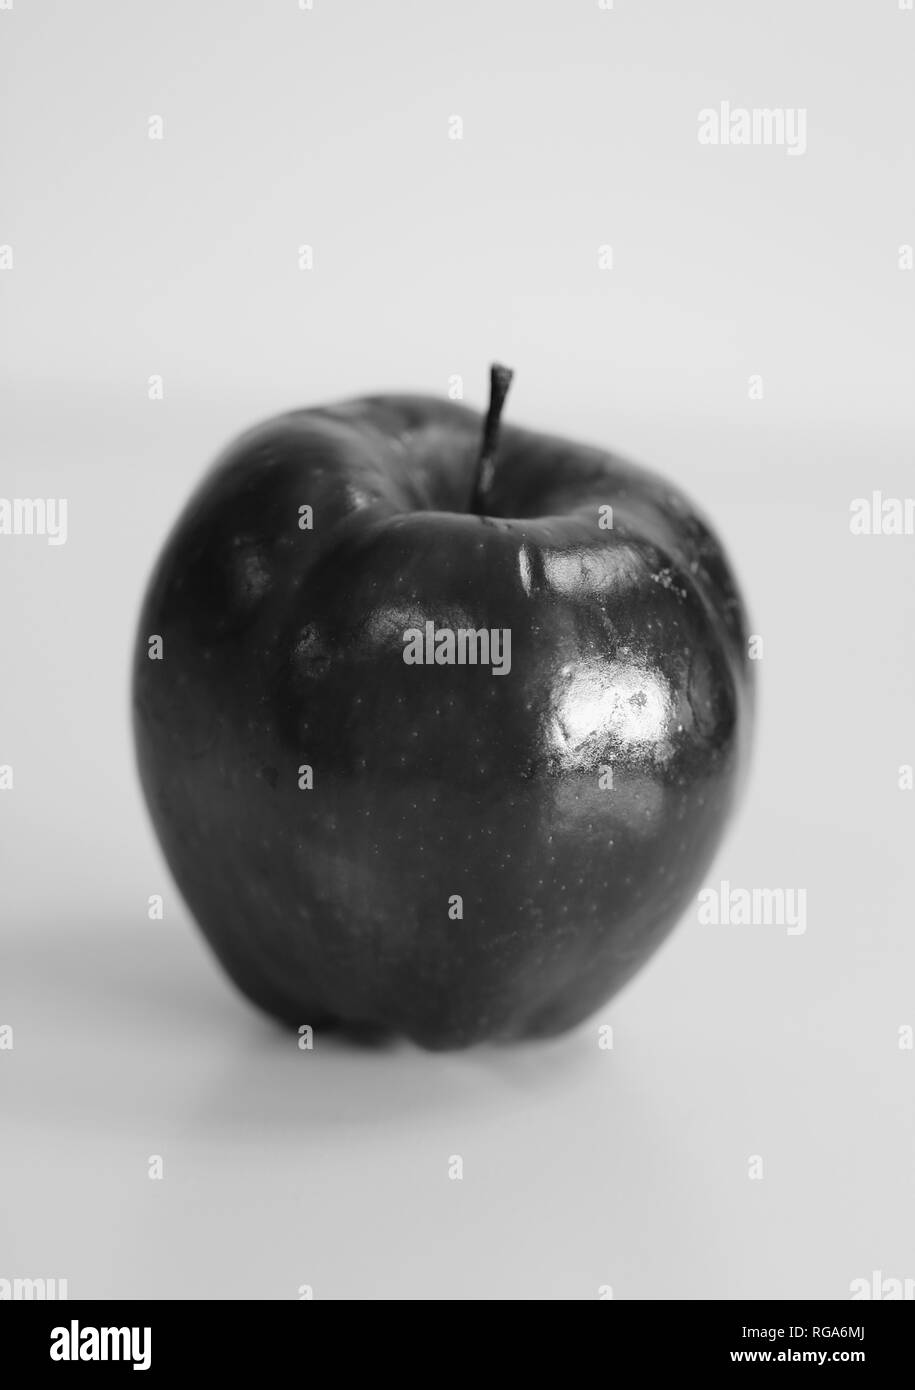 Makro Foto eines Red Delicious Apple. Schöne Nahaufnahme zeigt die Details dieser Frucht. Schwarz-weiß Foto. Stockfoto